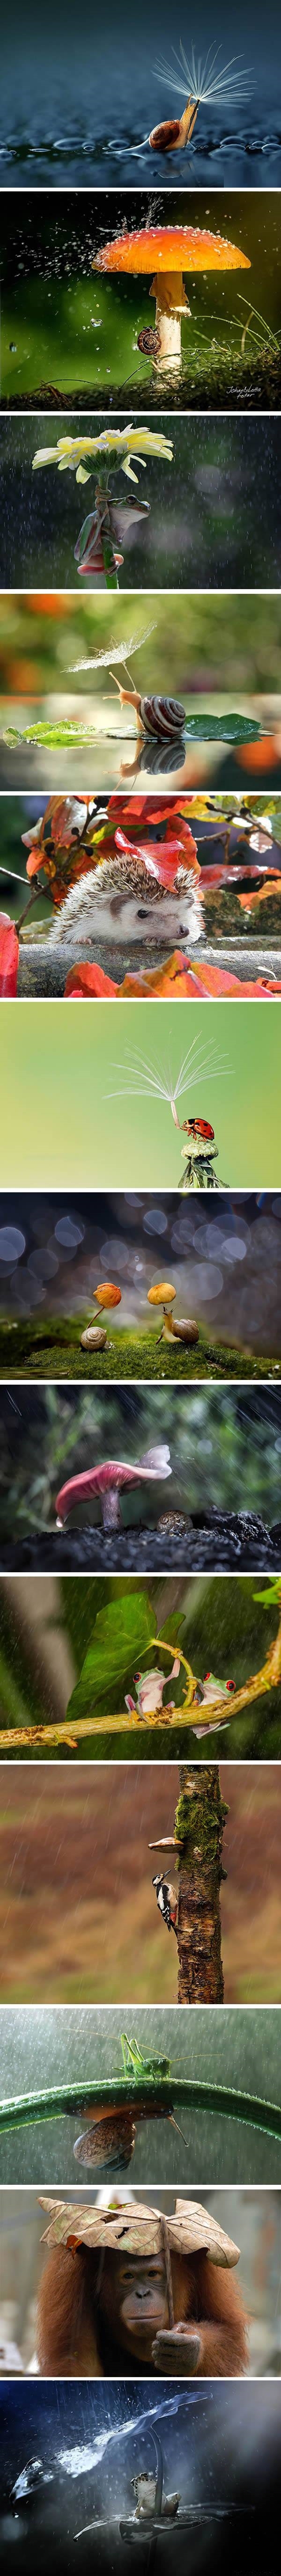 Animals' natural umbrellas